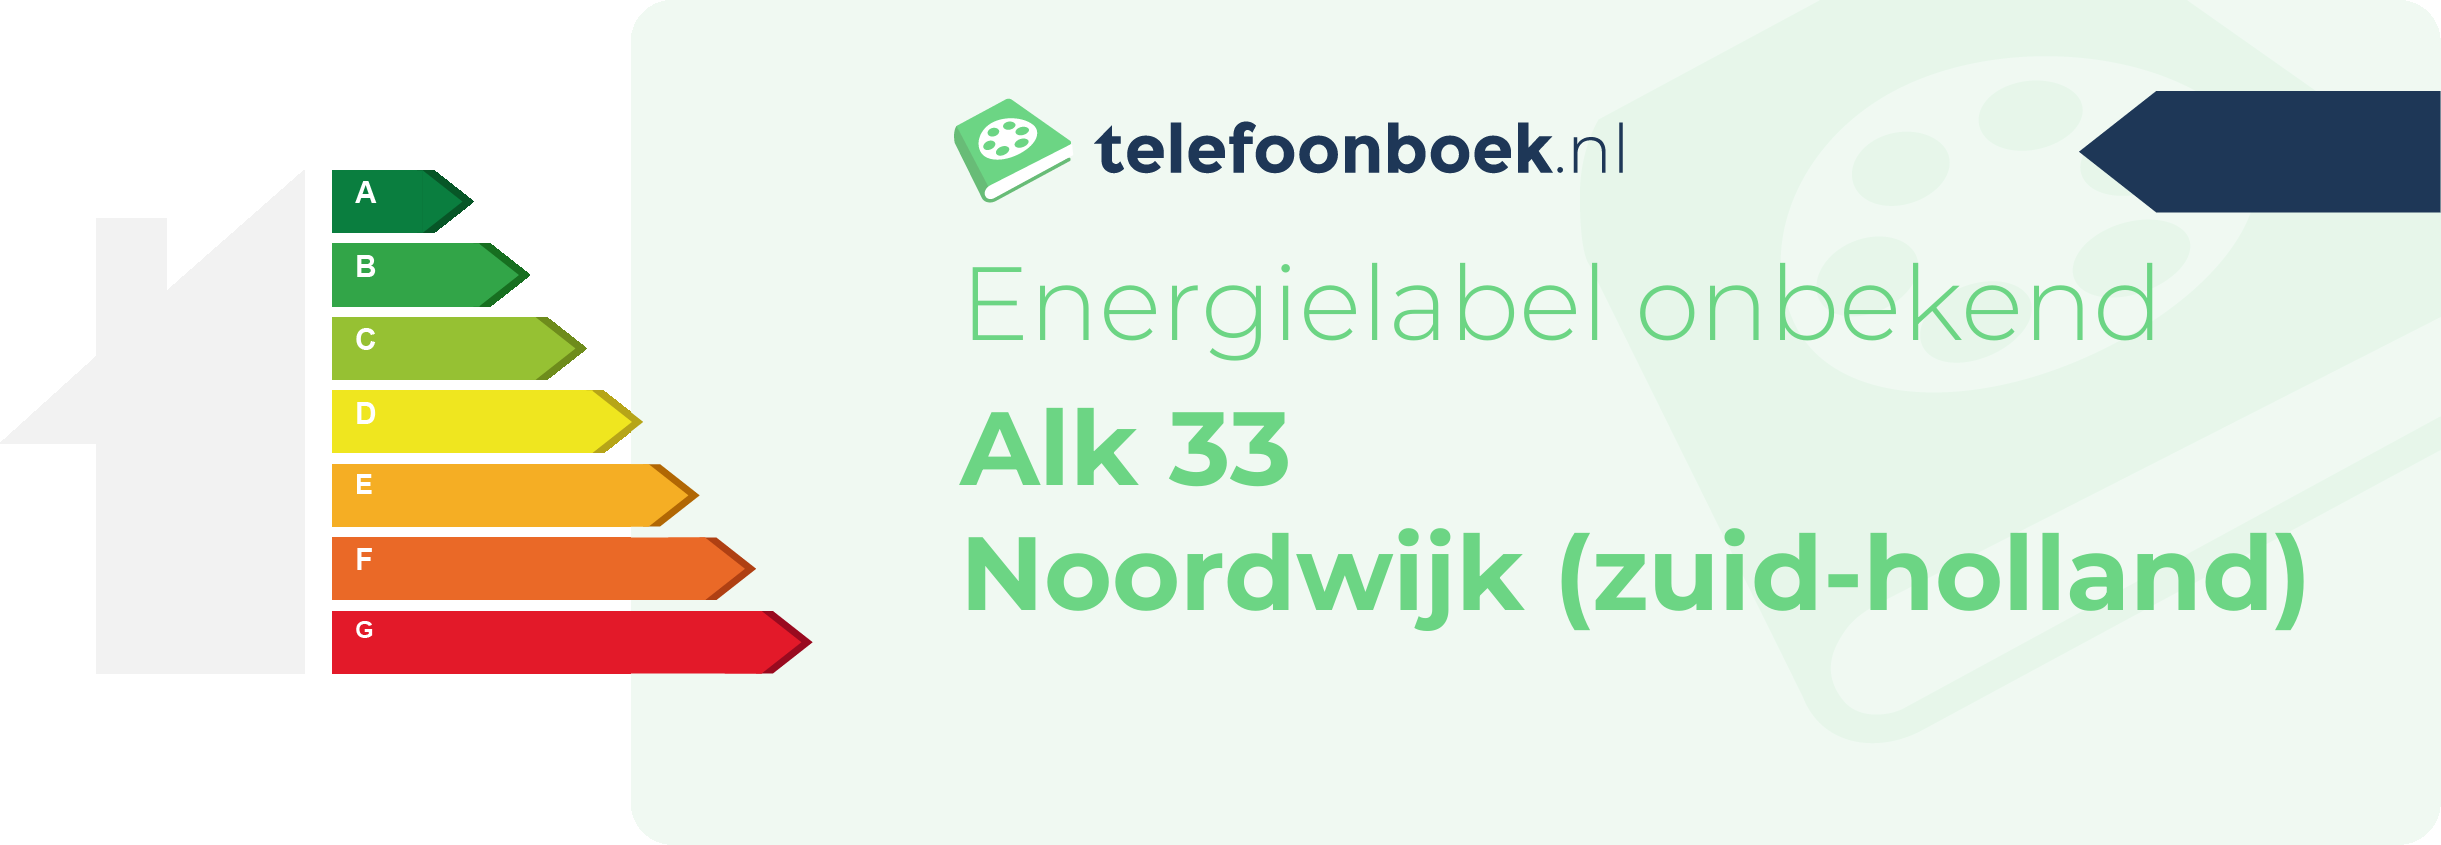 Energielabel Alk 33 Noordwijk (Zuid-Holland)